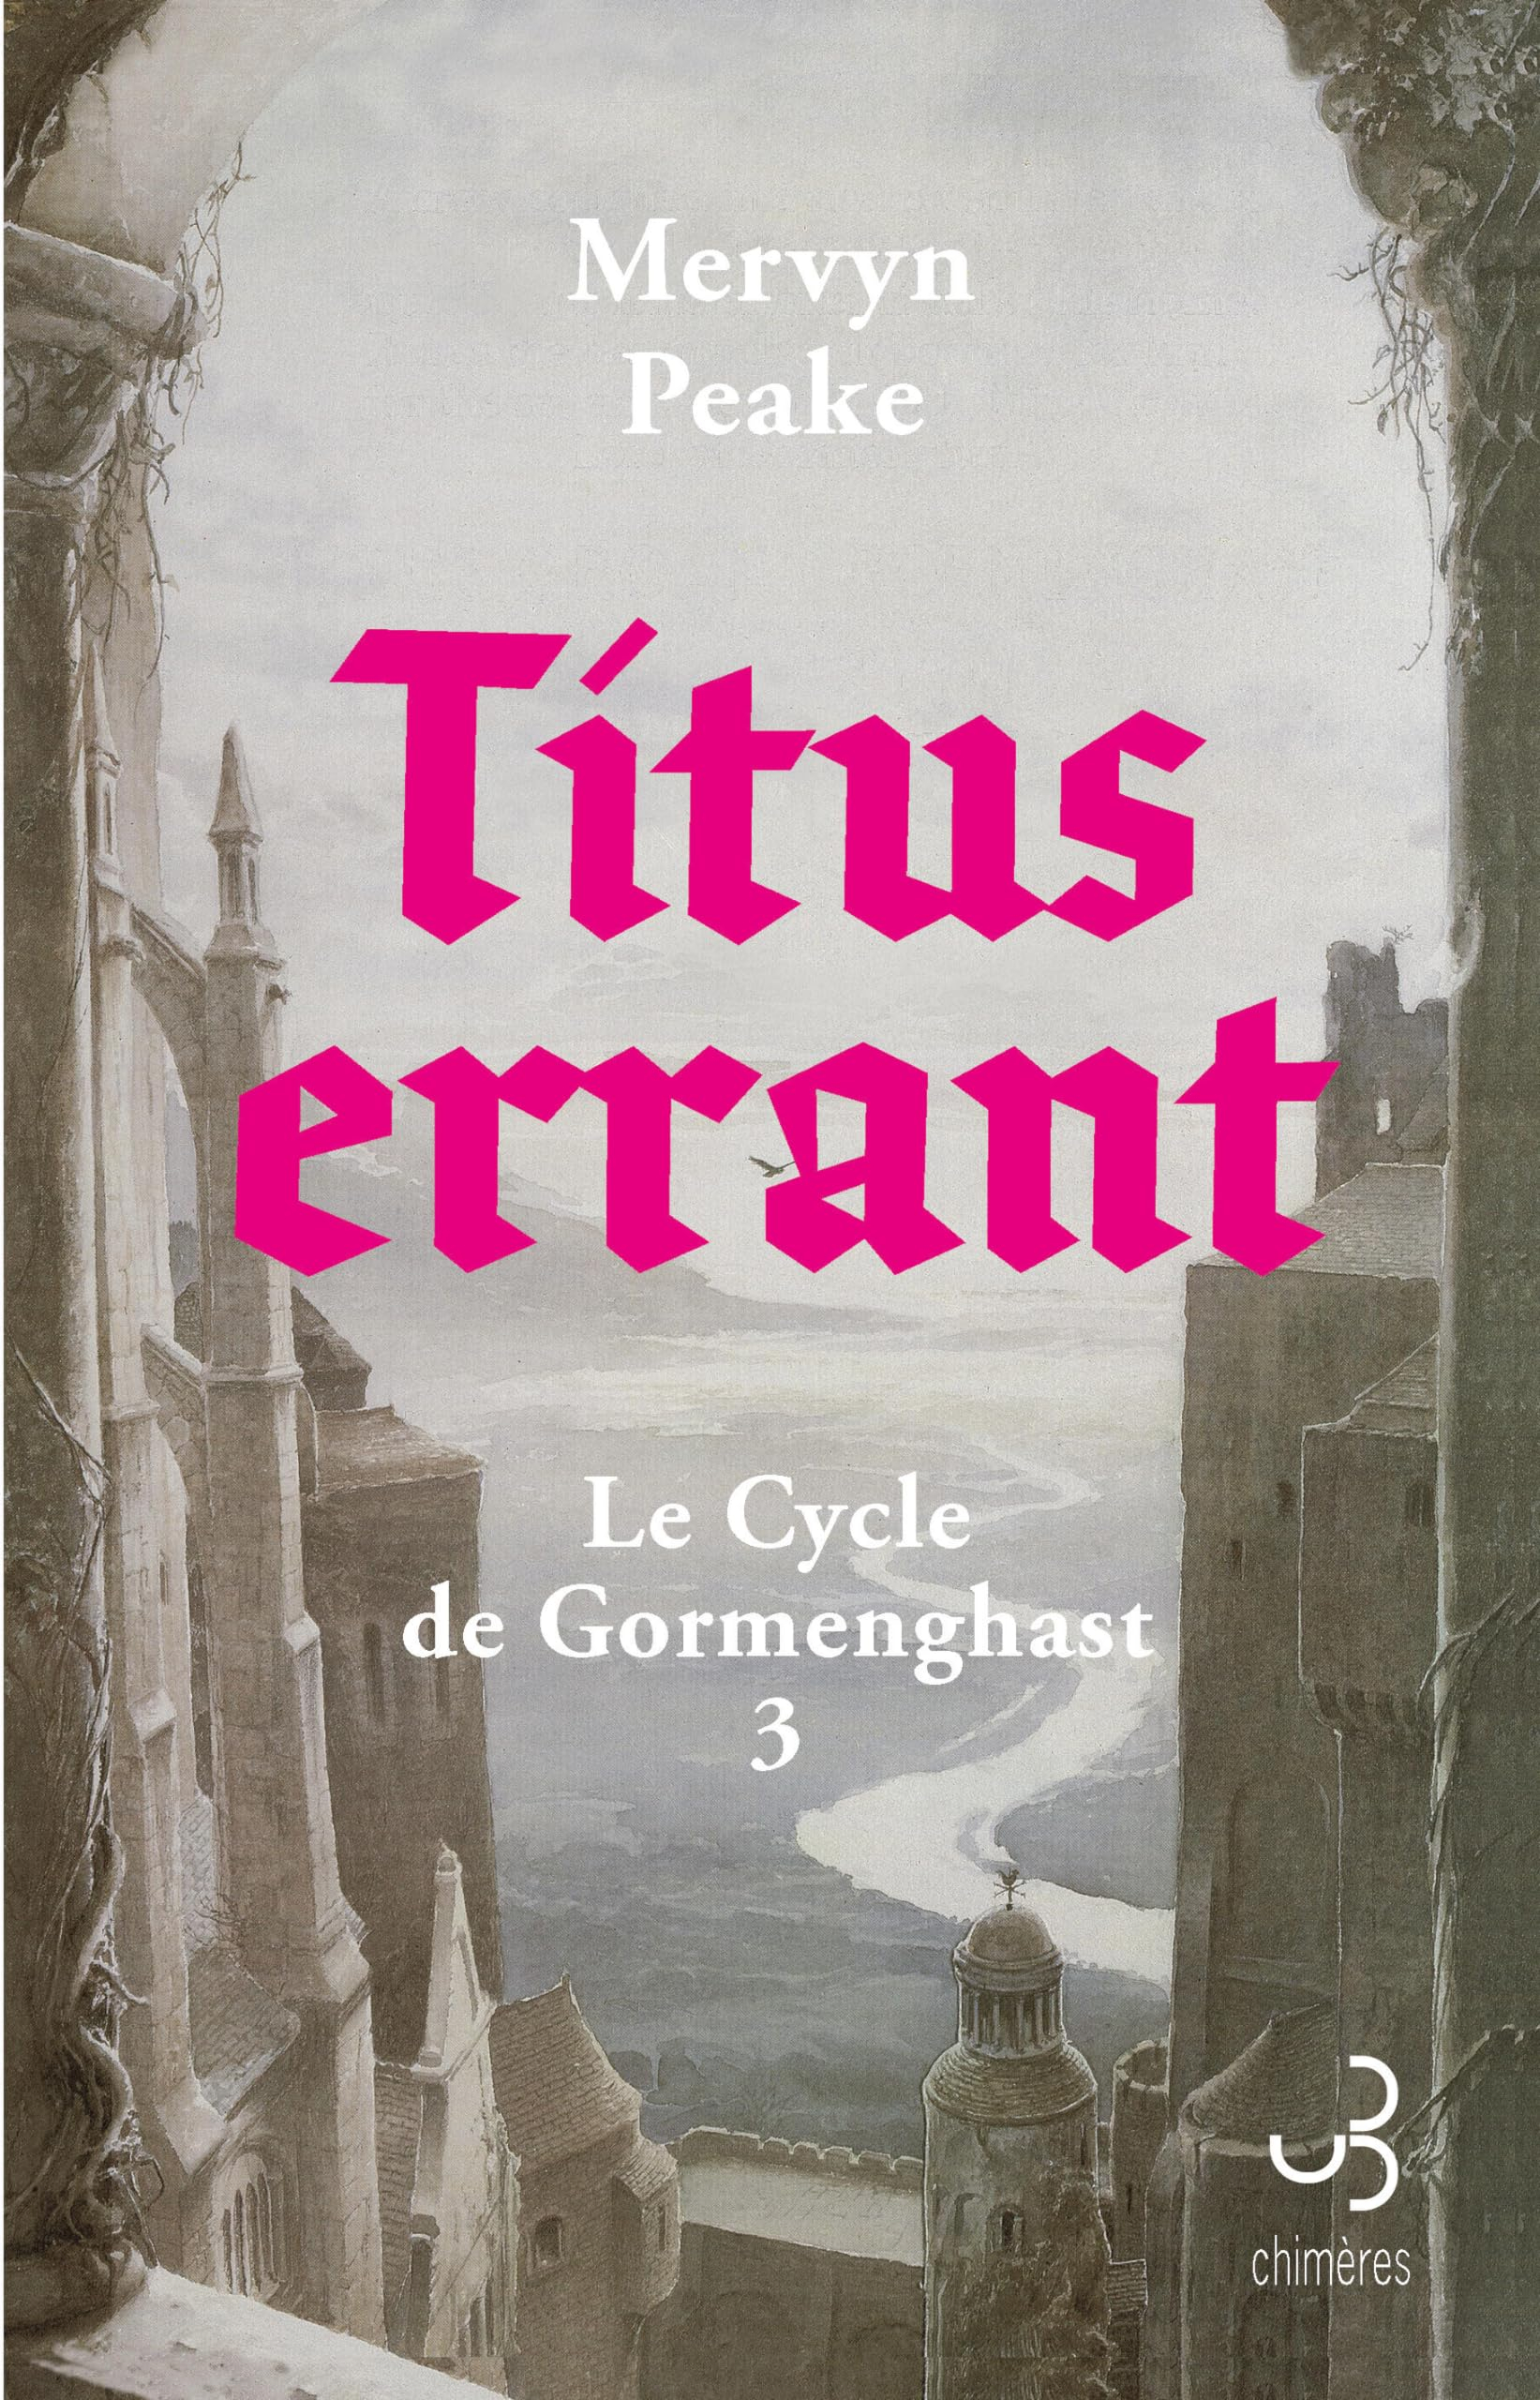 Le cycle de Gormenghast. Vol. 3. Titus errant